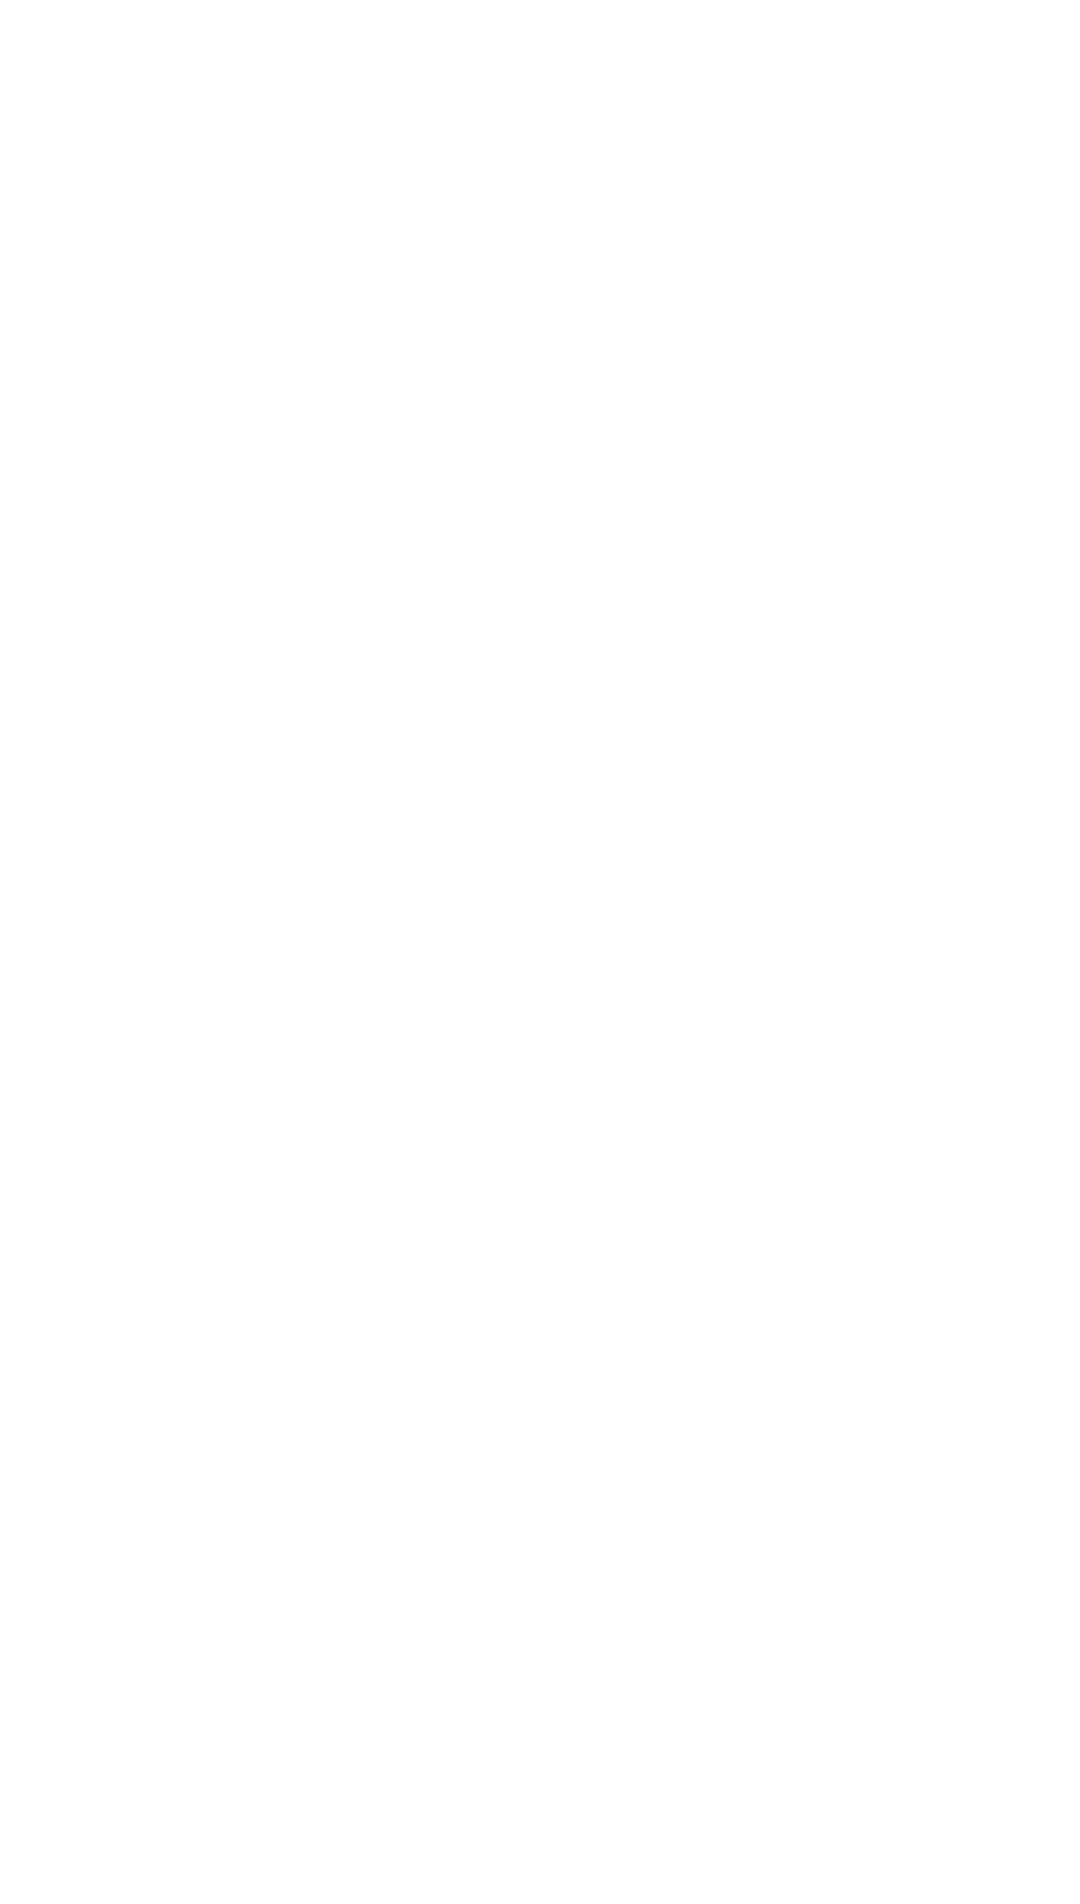 Неоновая вывеска, логотип, светящийся, буквы, ярко, Екатеринбург, екб